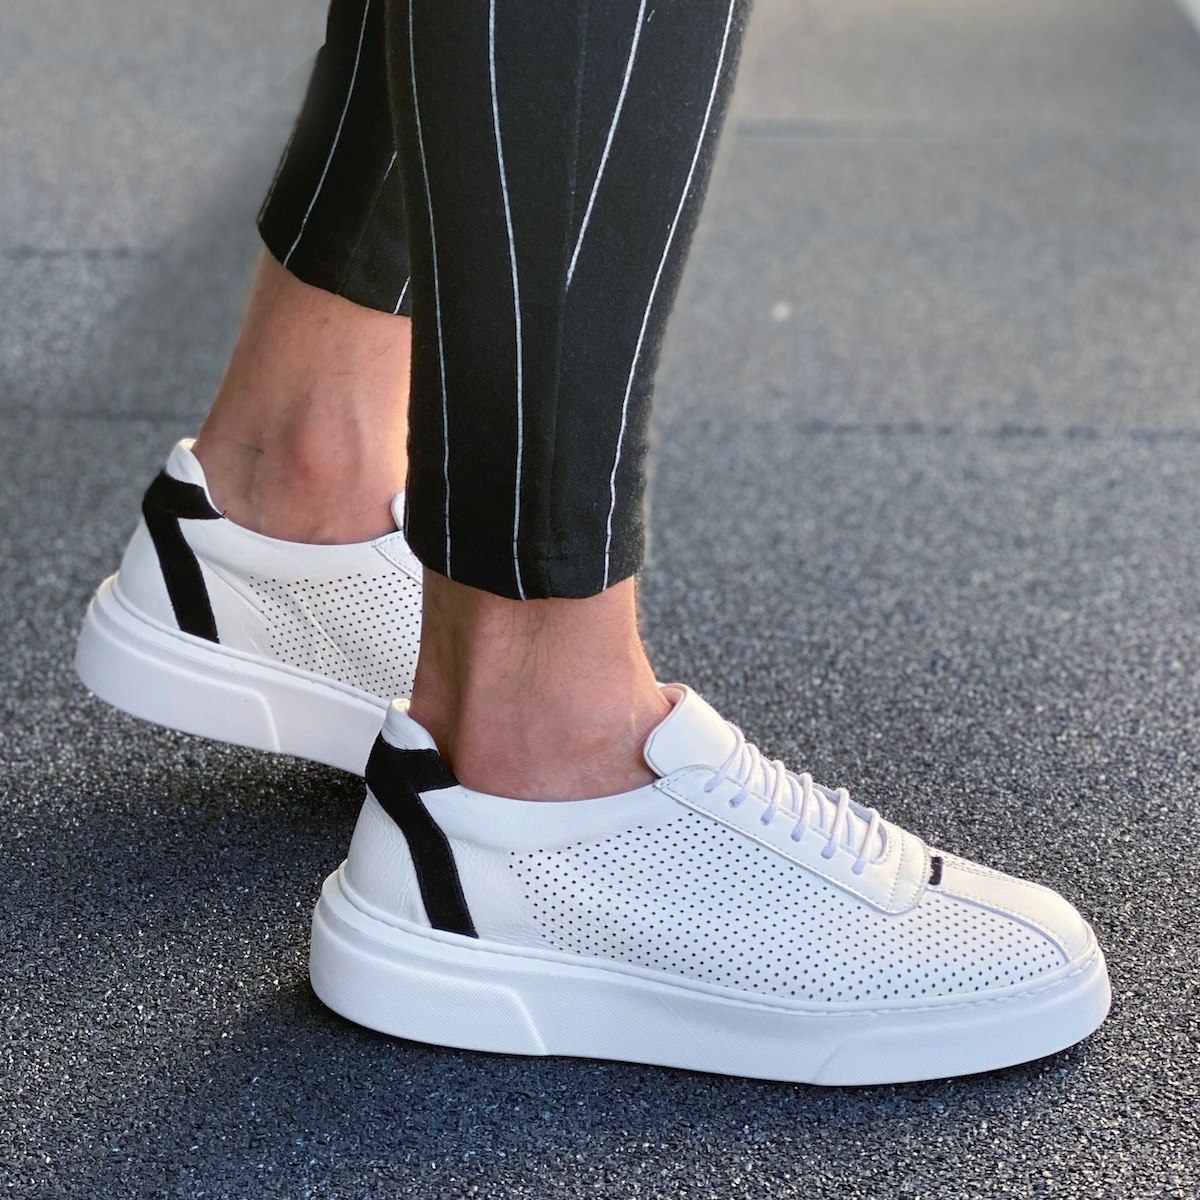 Herren Sneakers Aus Premium Leder Mit Loch Details Und Streifen In Weiß - 2